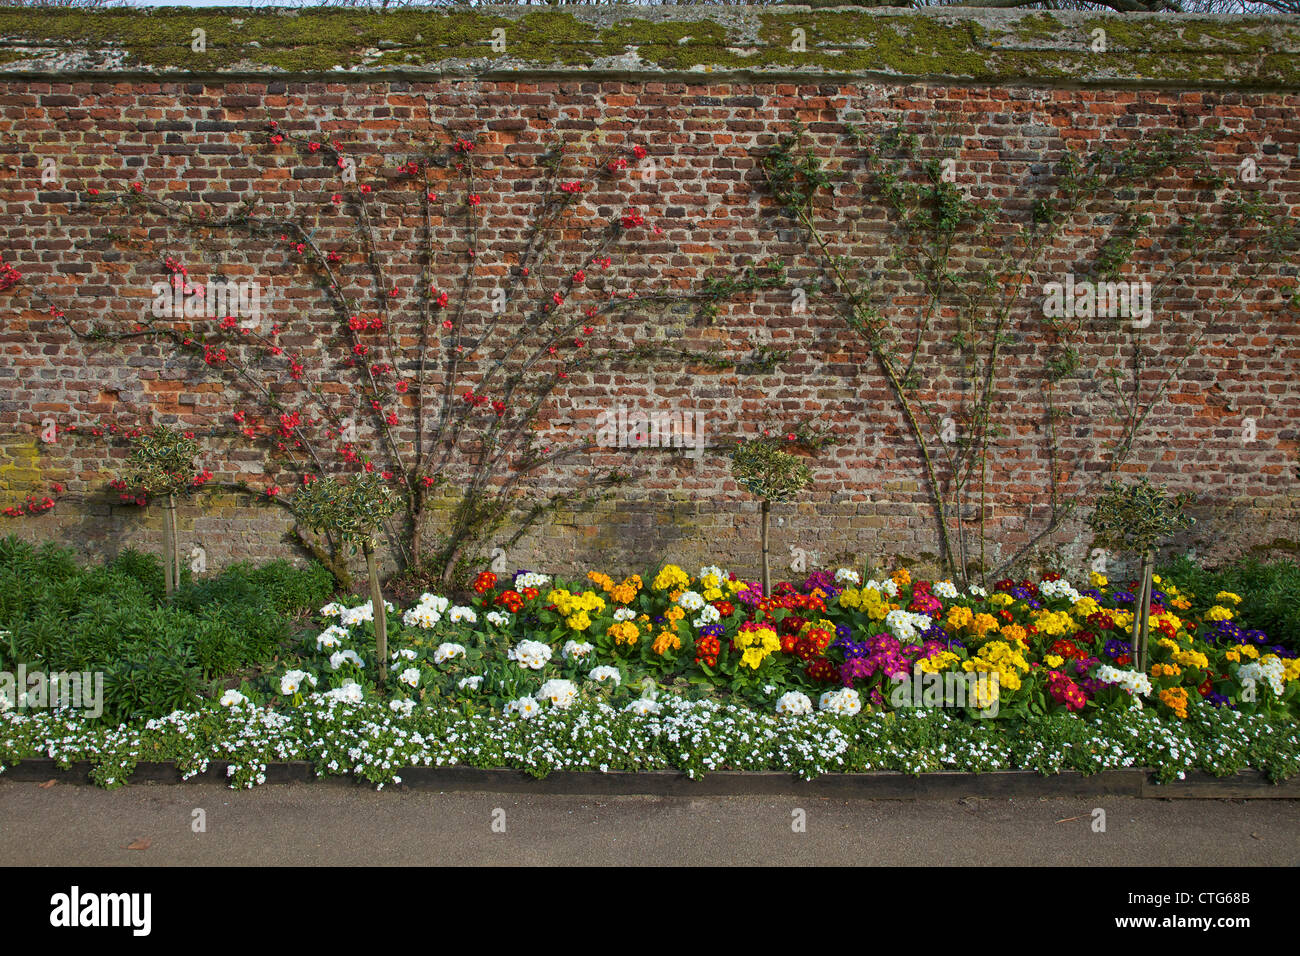 Los jardines formales, el Palacio de Hampton Court, Londres, Surrey, Inglaterra, UK, Reino Unido, GB, Gran Bretaña, Islas Británicas, Europa Foto de stock